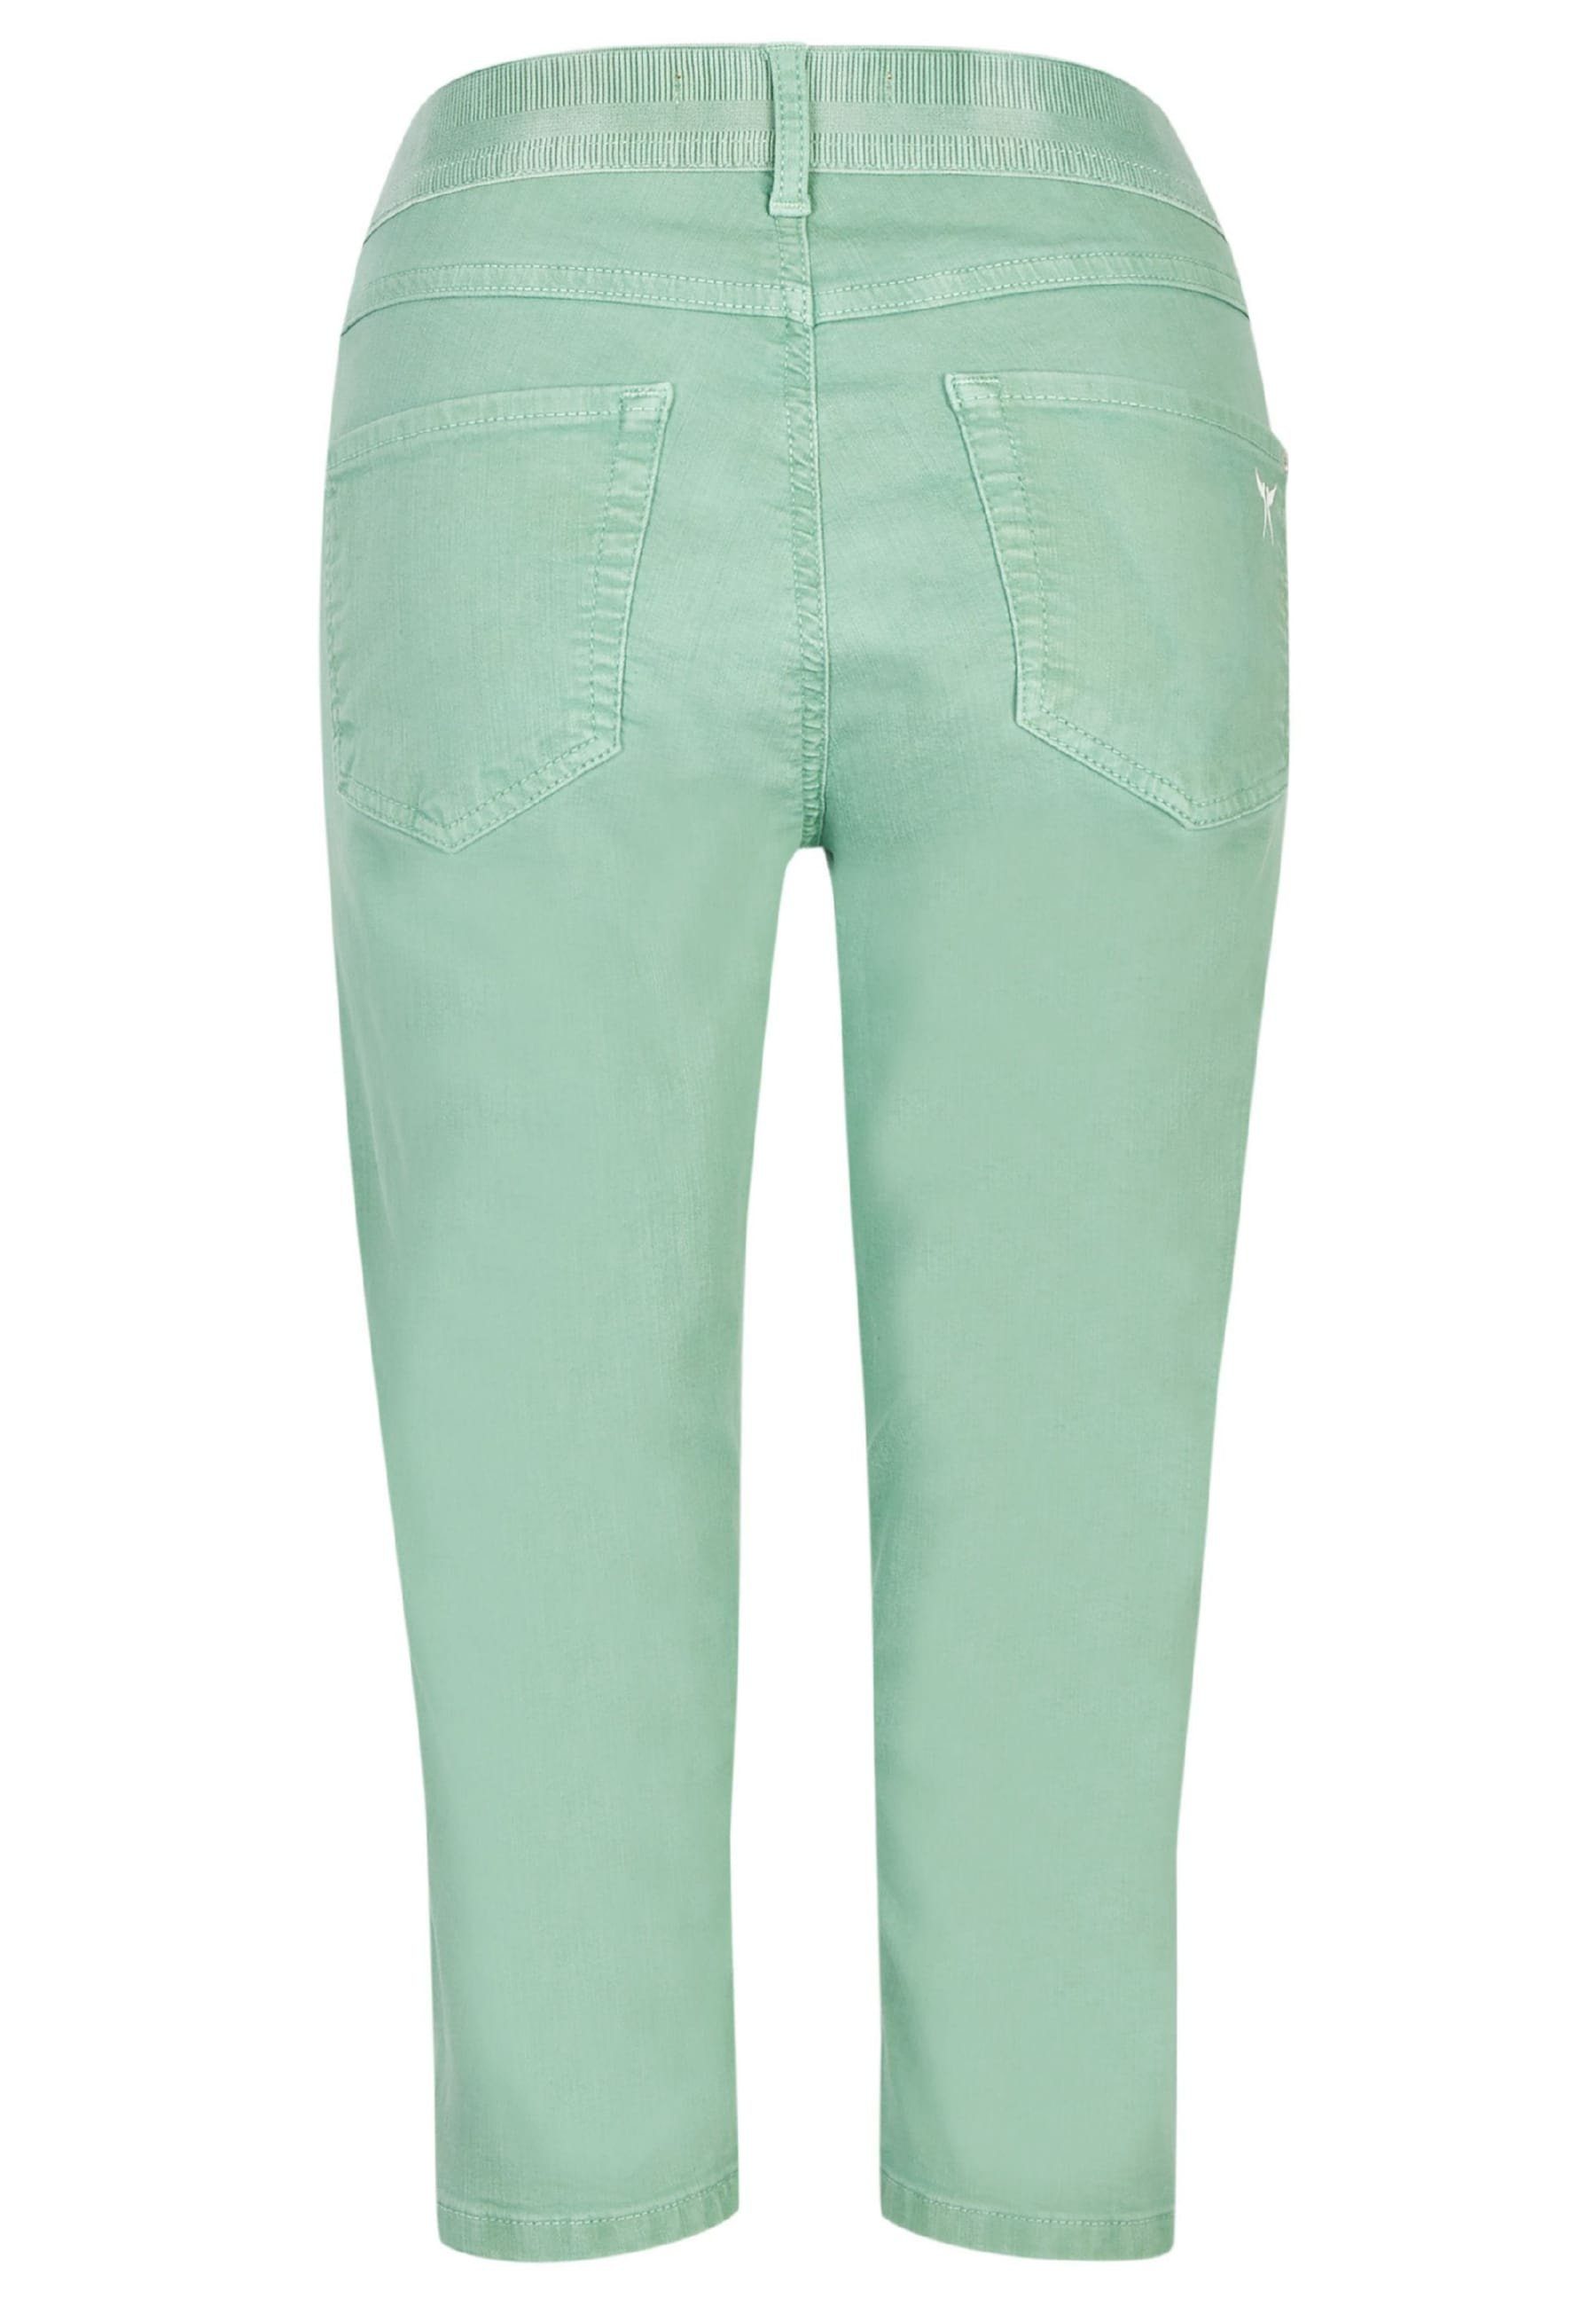 ANGELS Jeans mit Label-Applikationen grün mit OSFA Denim Capri Slim-fit-Jeans Coloured